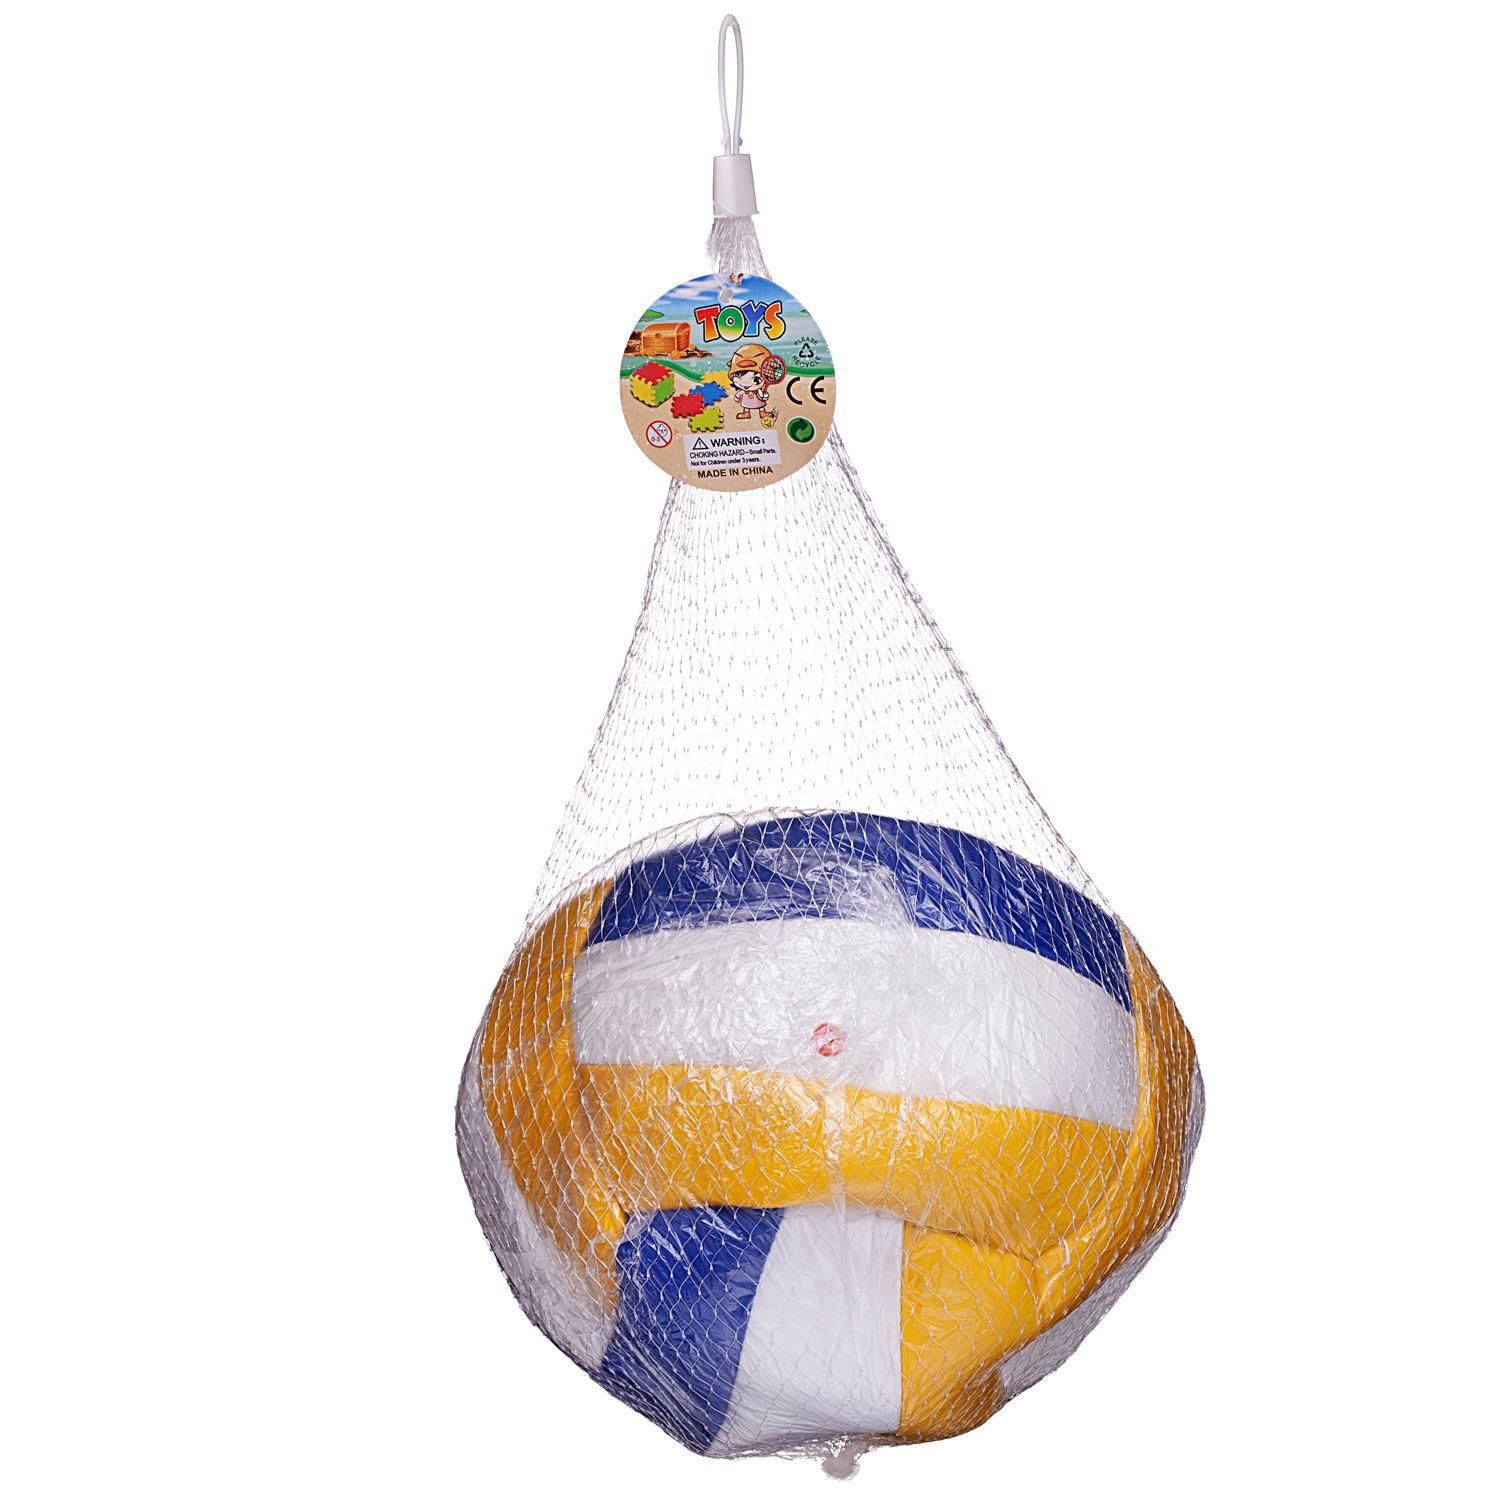 Мяч Junfa волейбольный PVC 23 см бело-желто-синий